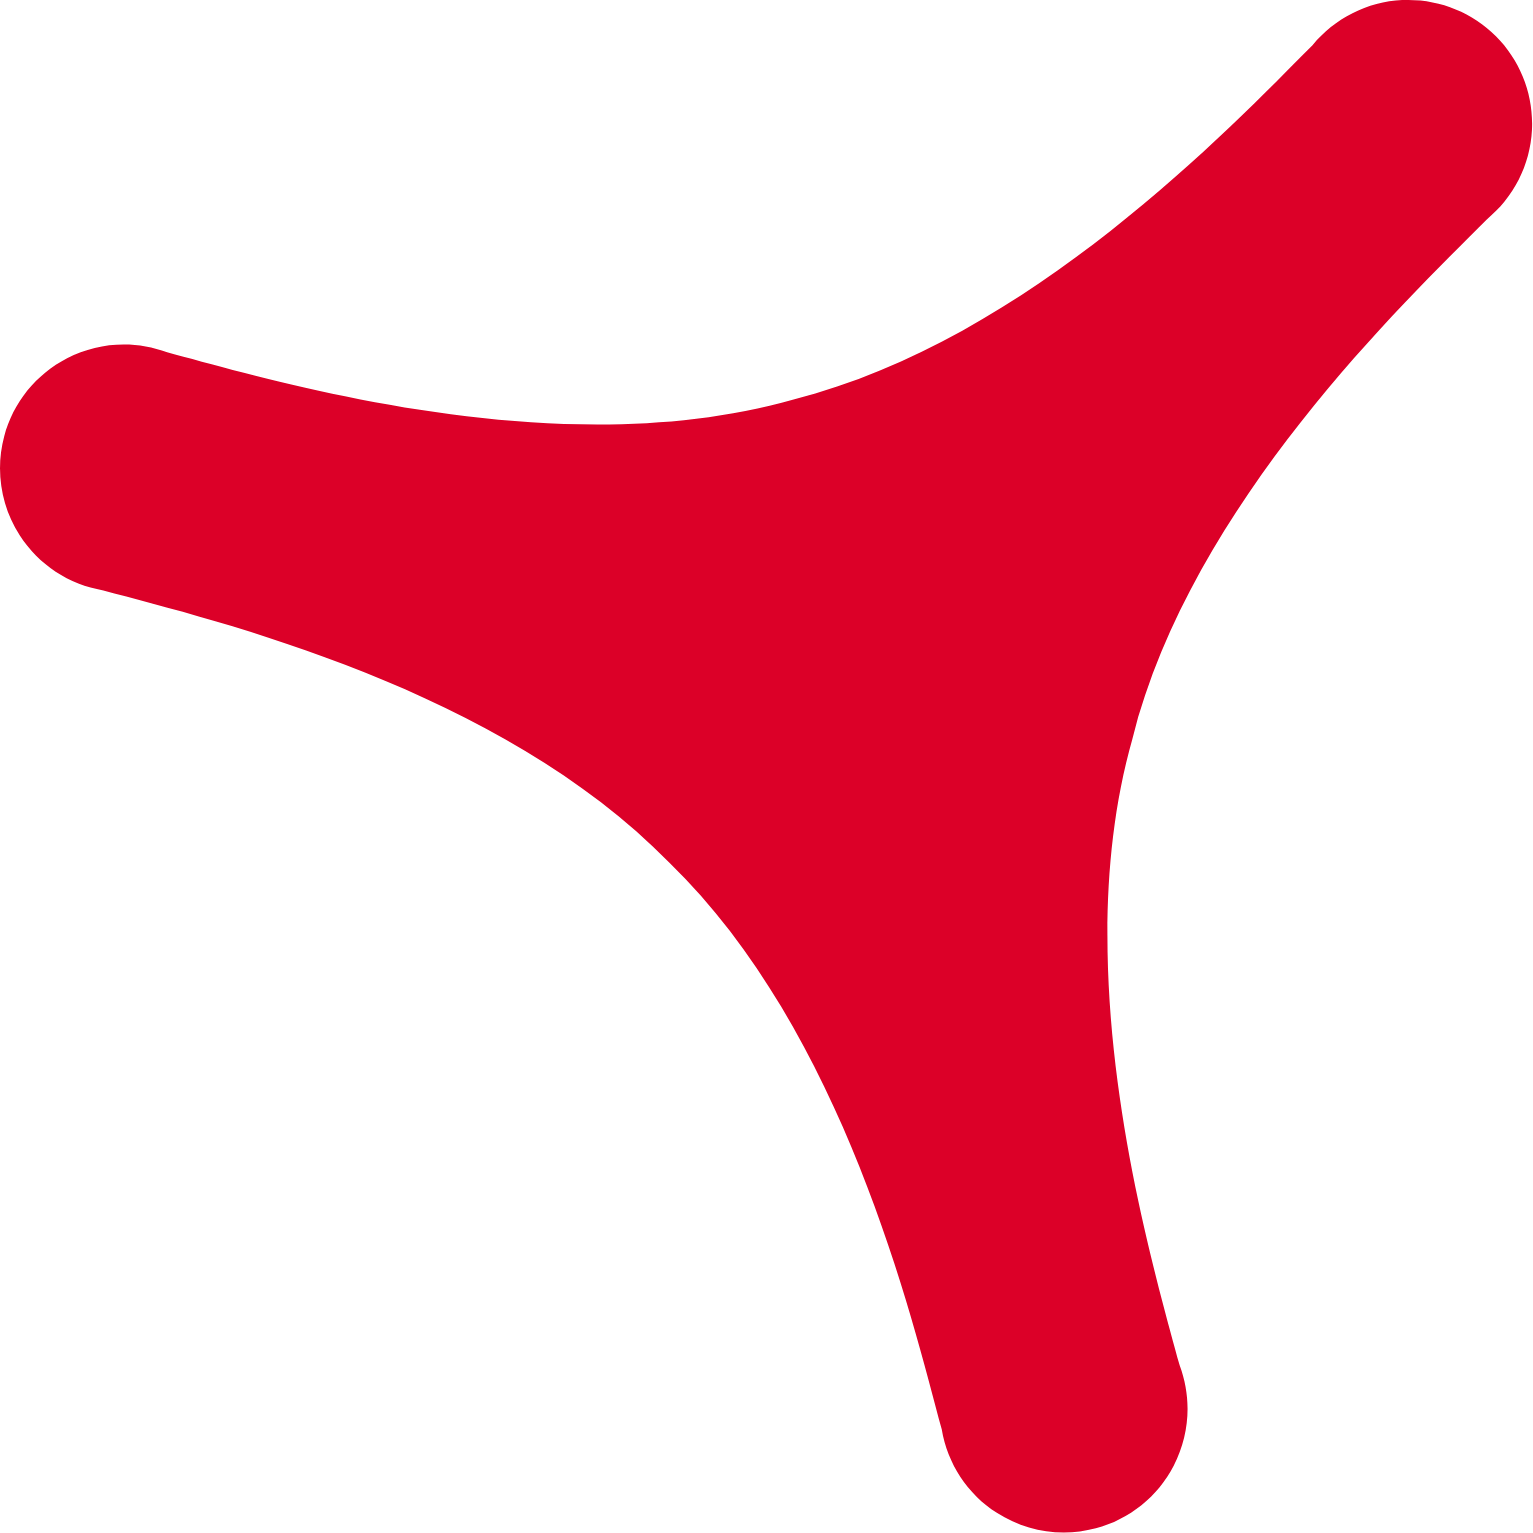 Grupo Catalana Occidente logo (PNG transparent)